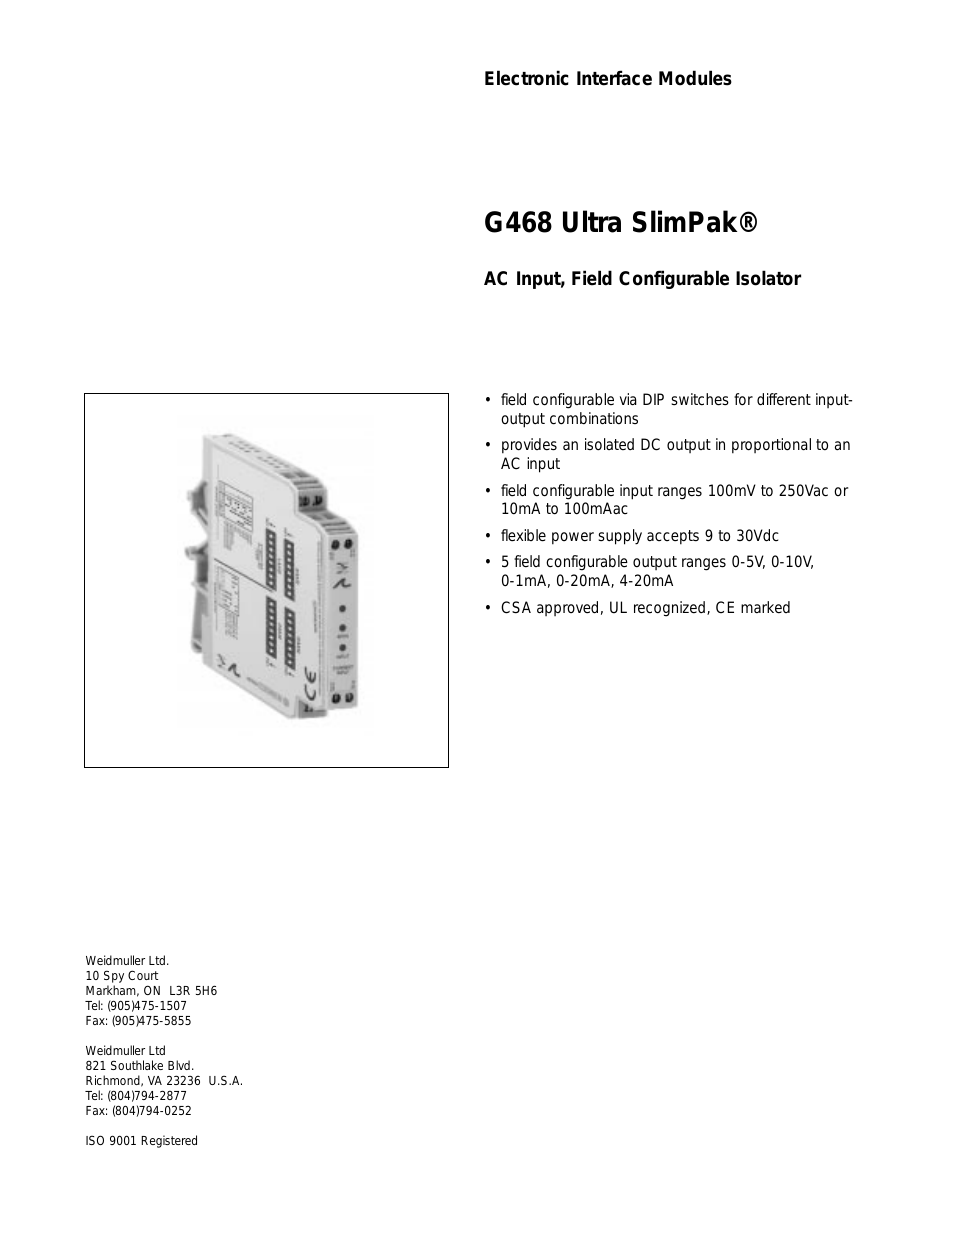 G468 Ultra SlimPak